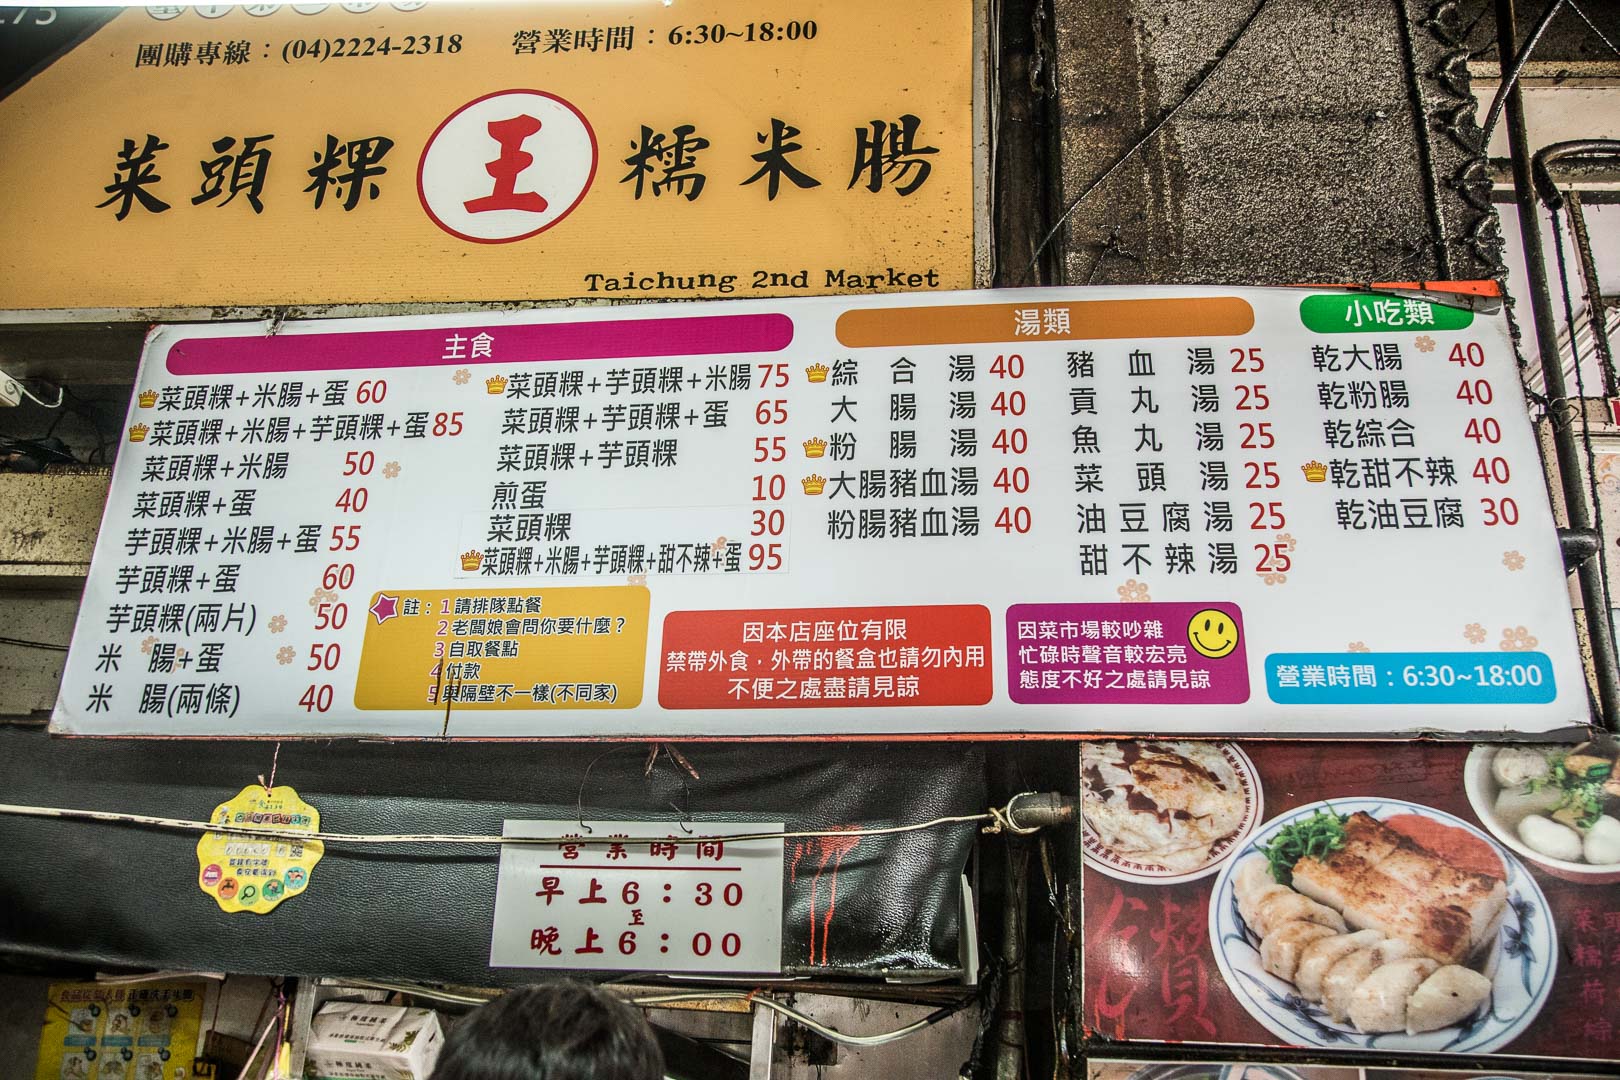 台中第二市場蘿蔔糕,王家菜頭粿糯米腸,台中美食,台中小吃,台中第二市場美食,台中蘿蔔糕,台中菜頭粿